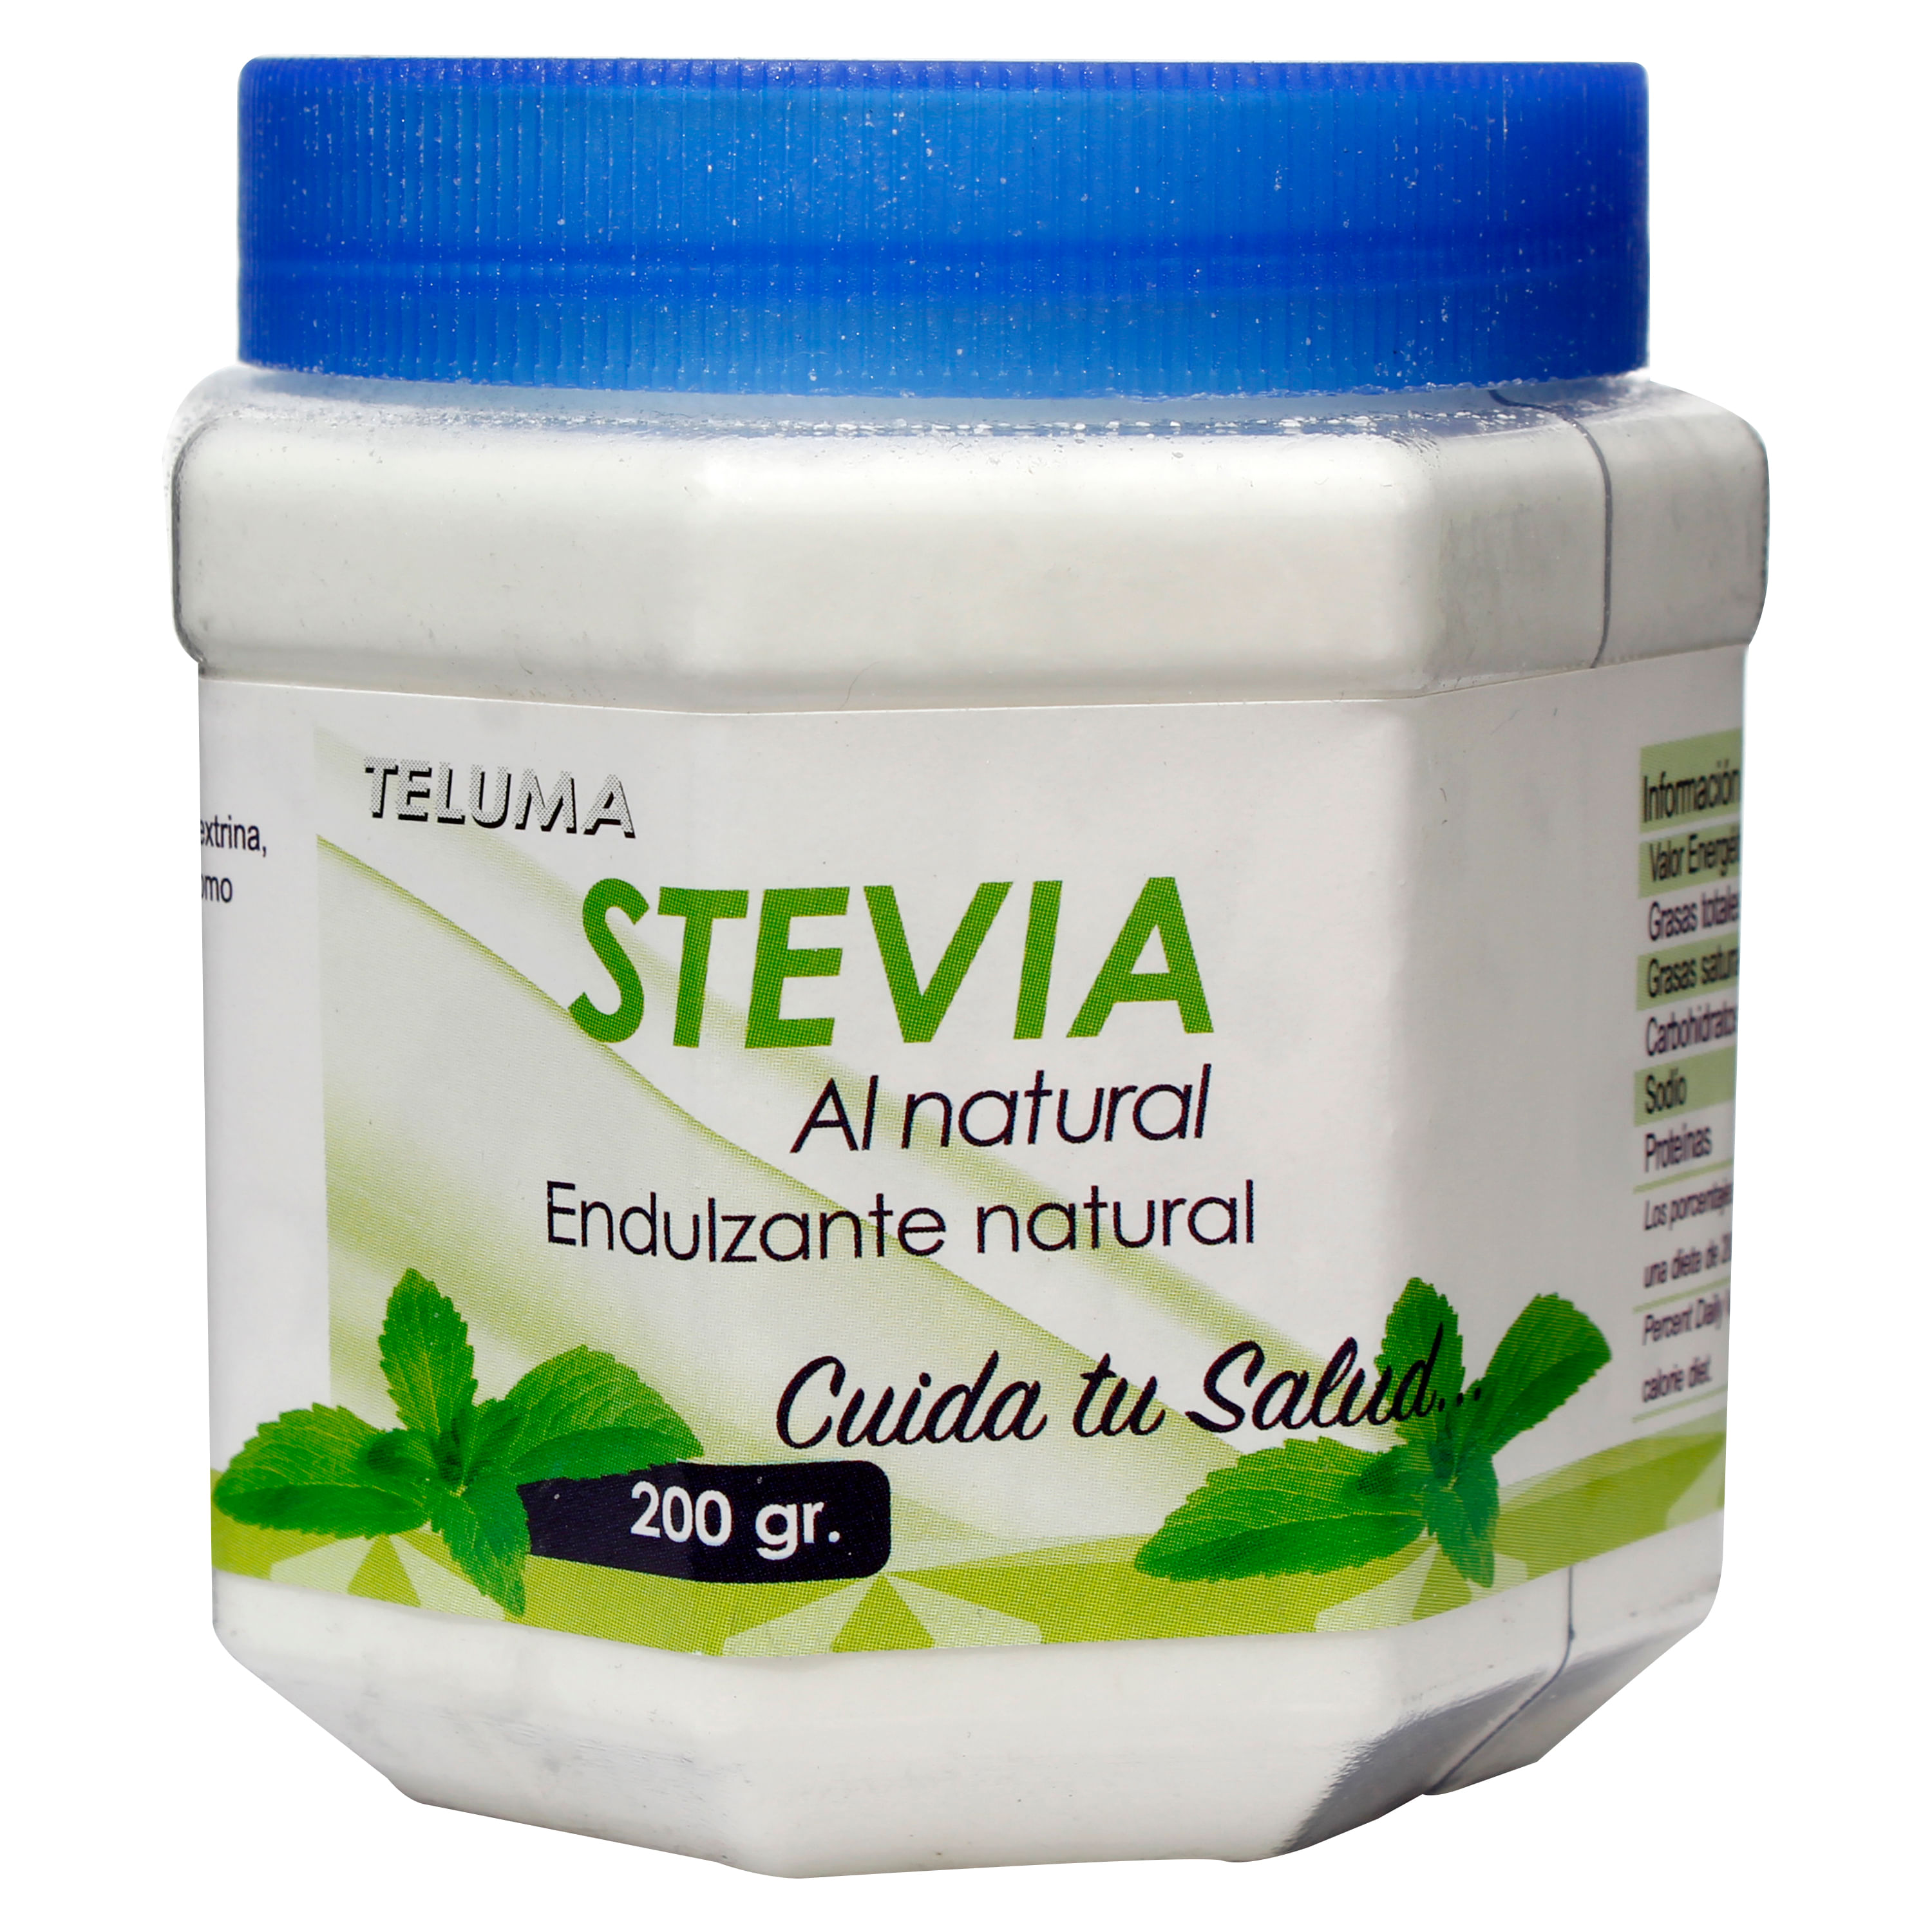 Sustitu-Azucar-Stevia-Teluma-Tarro-200Gr-1-30063